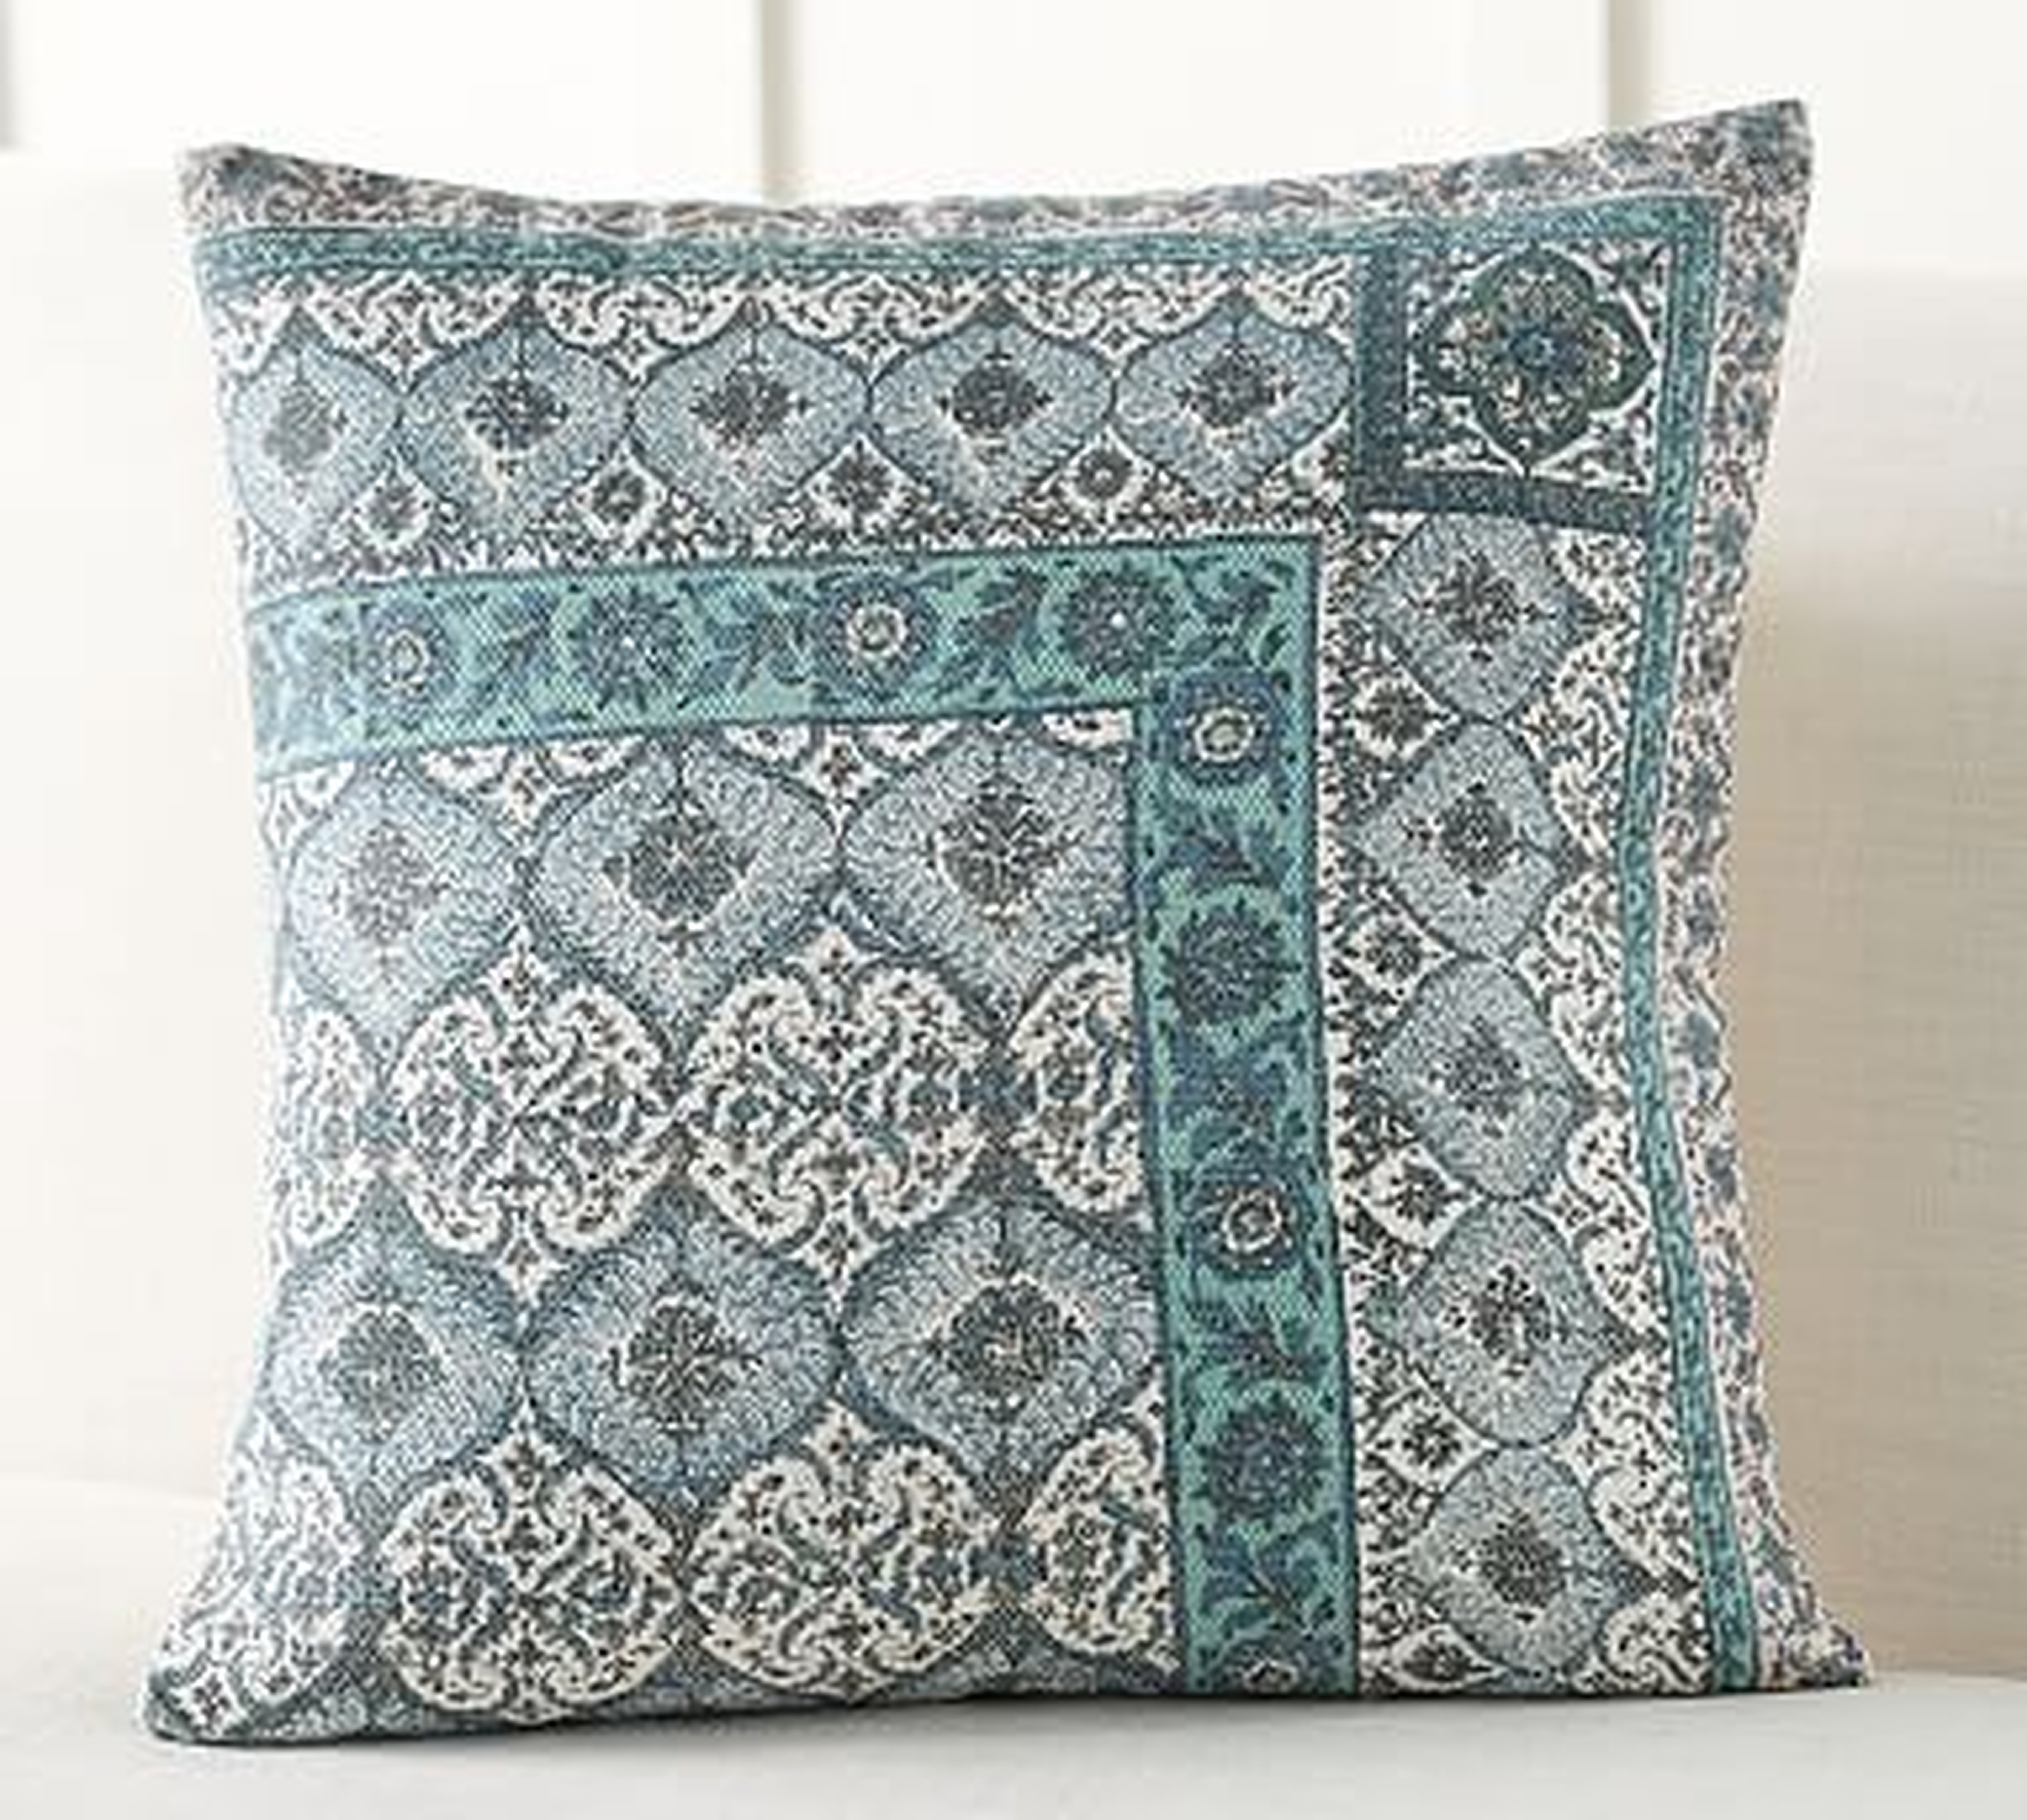 Vesper Block Print Inspired Pillow Cover, 22", Blue Multi - Pottery Barn